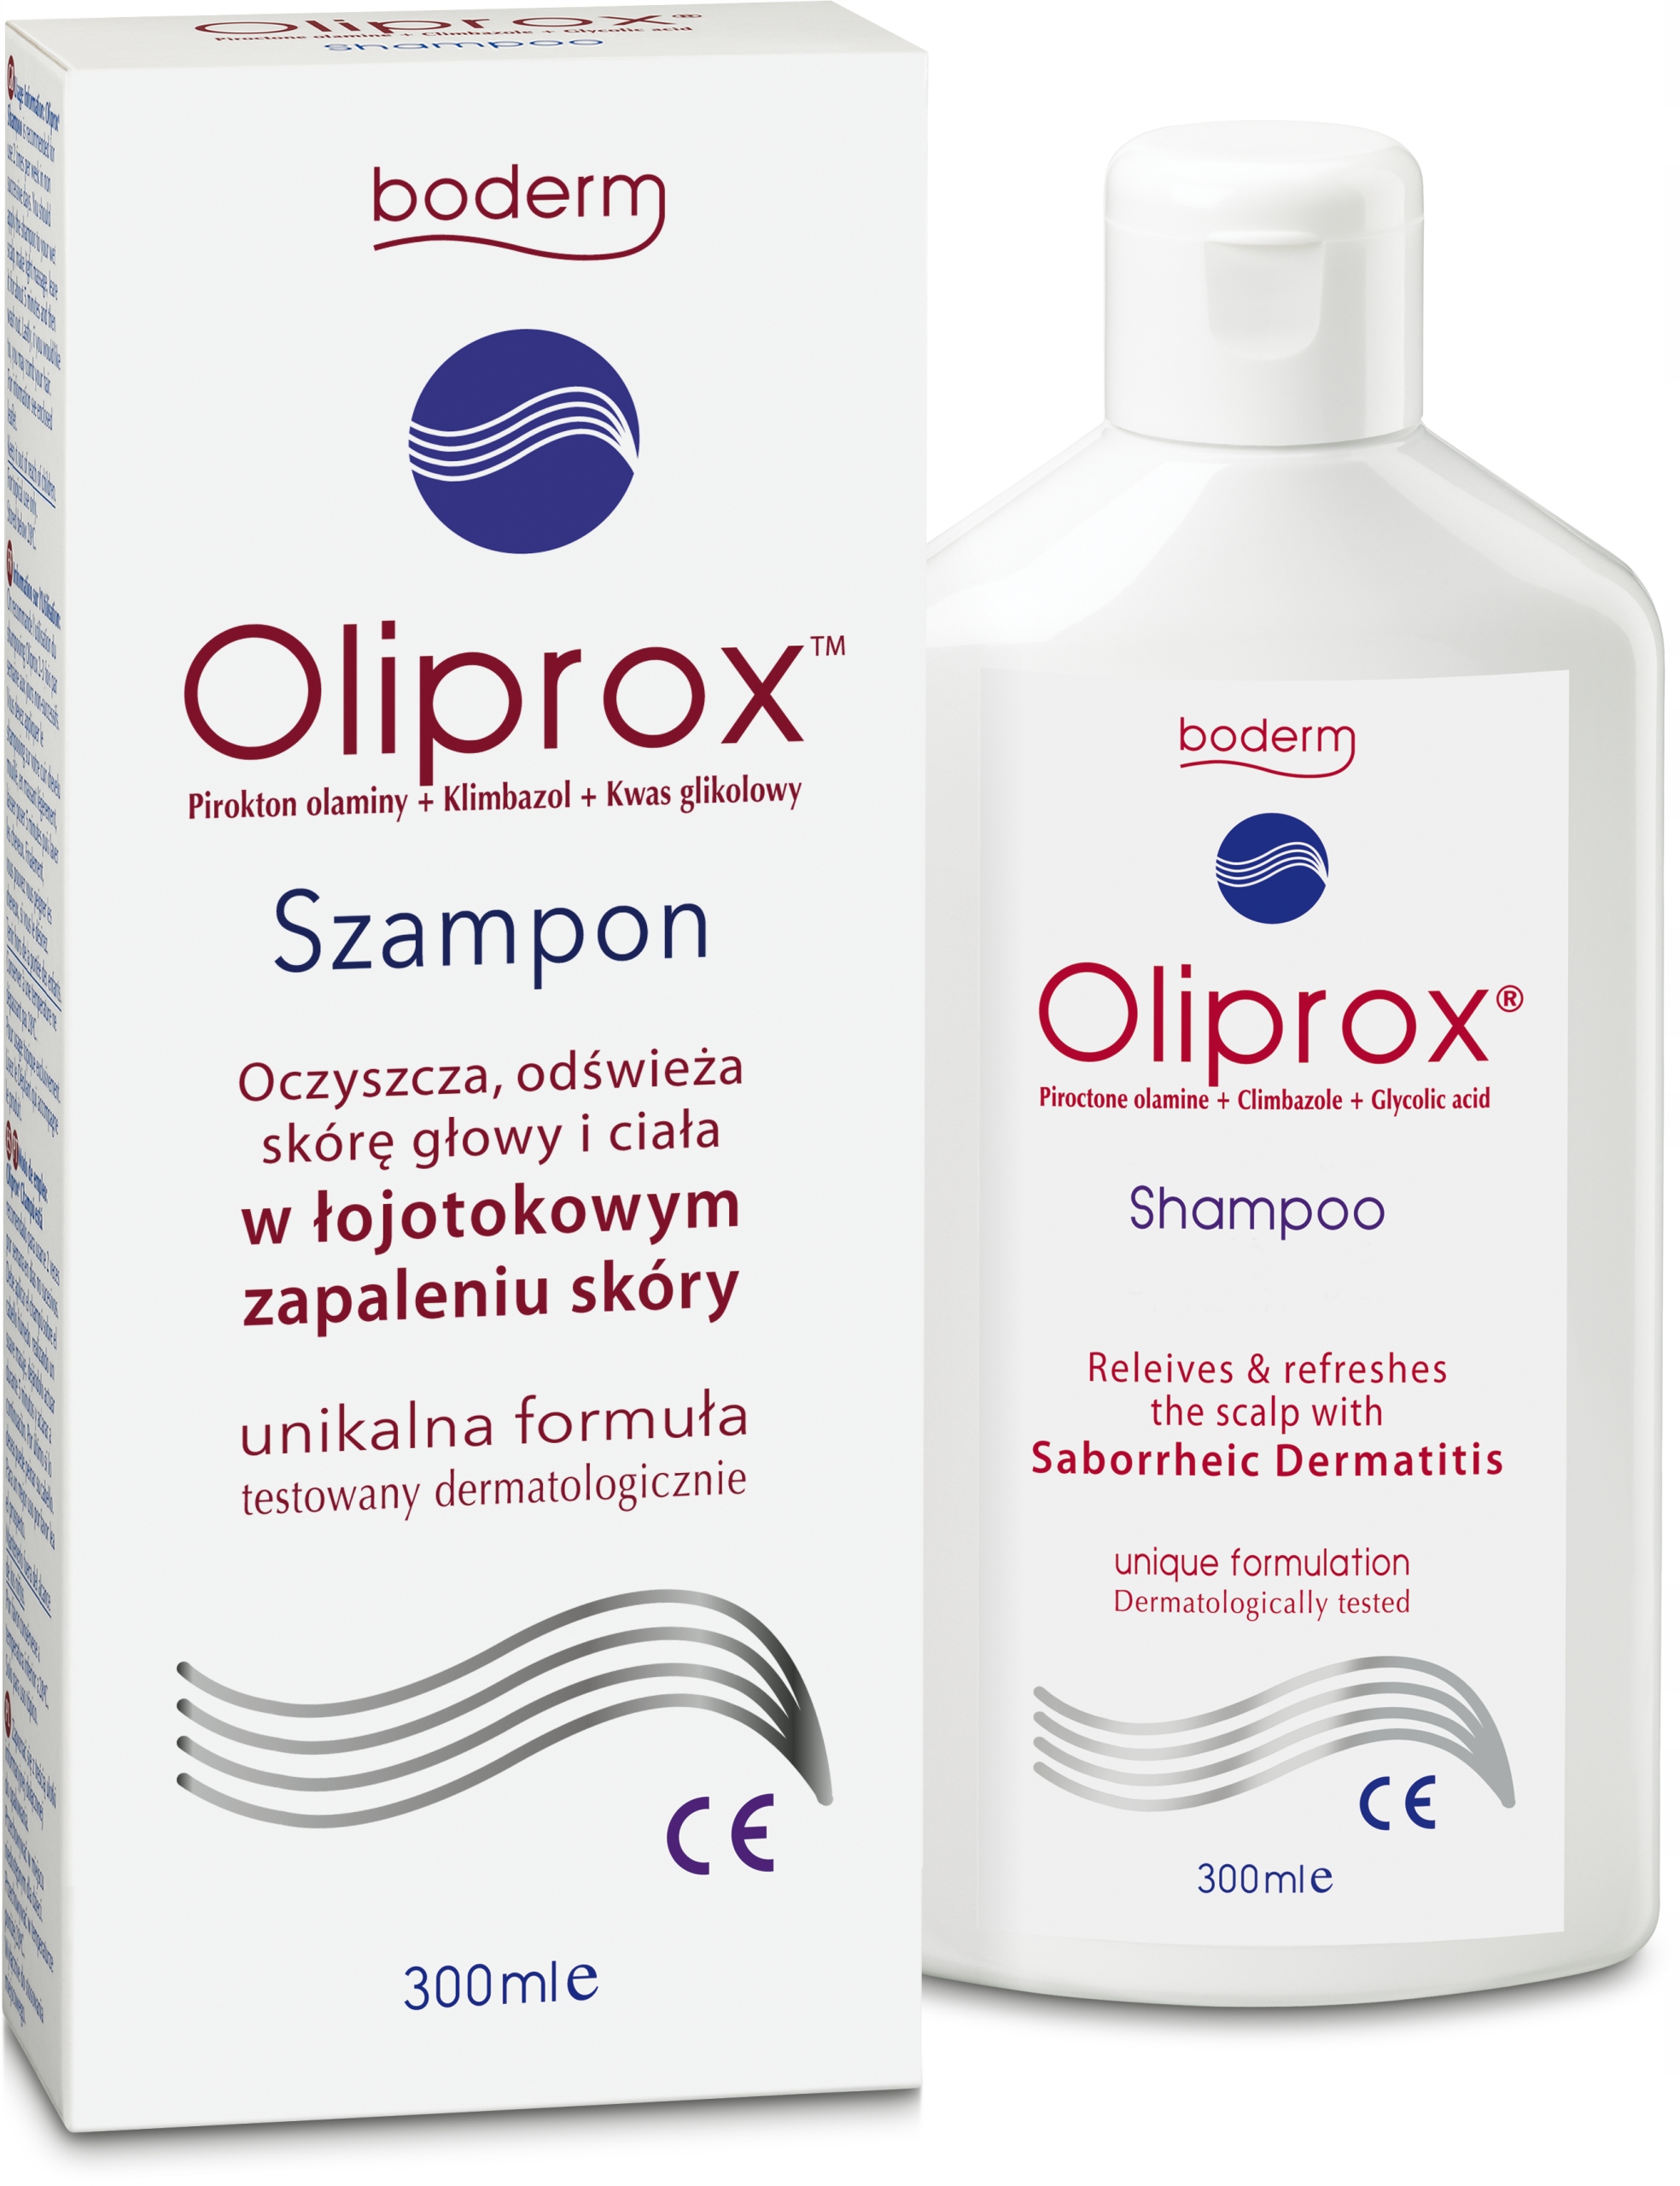 oliprox czy pirolam szampon